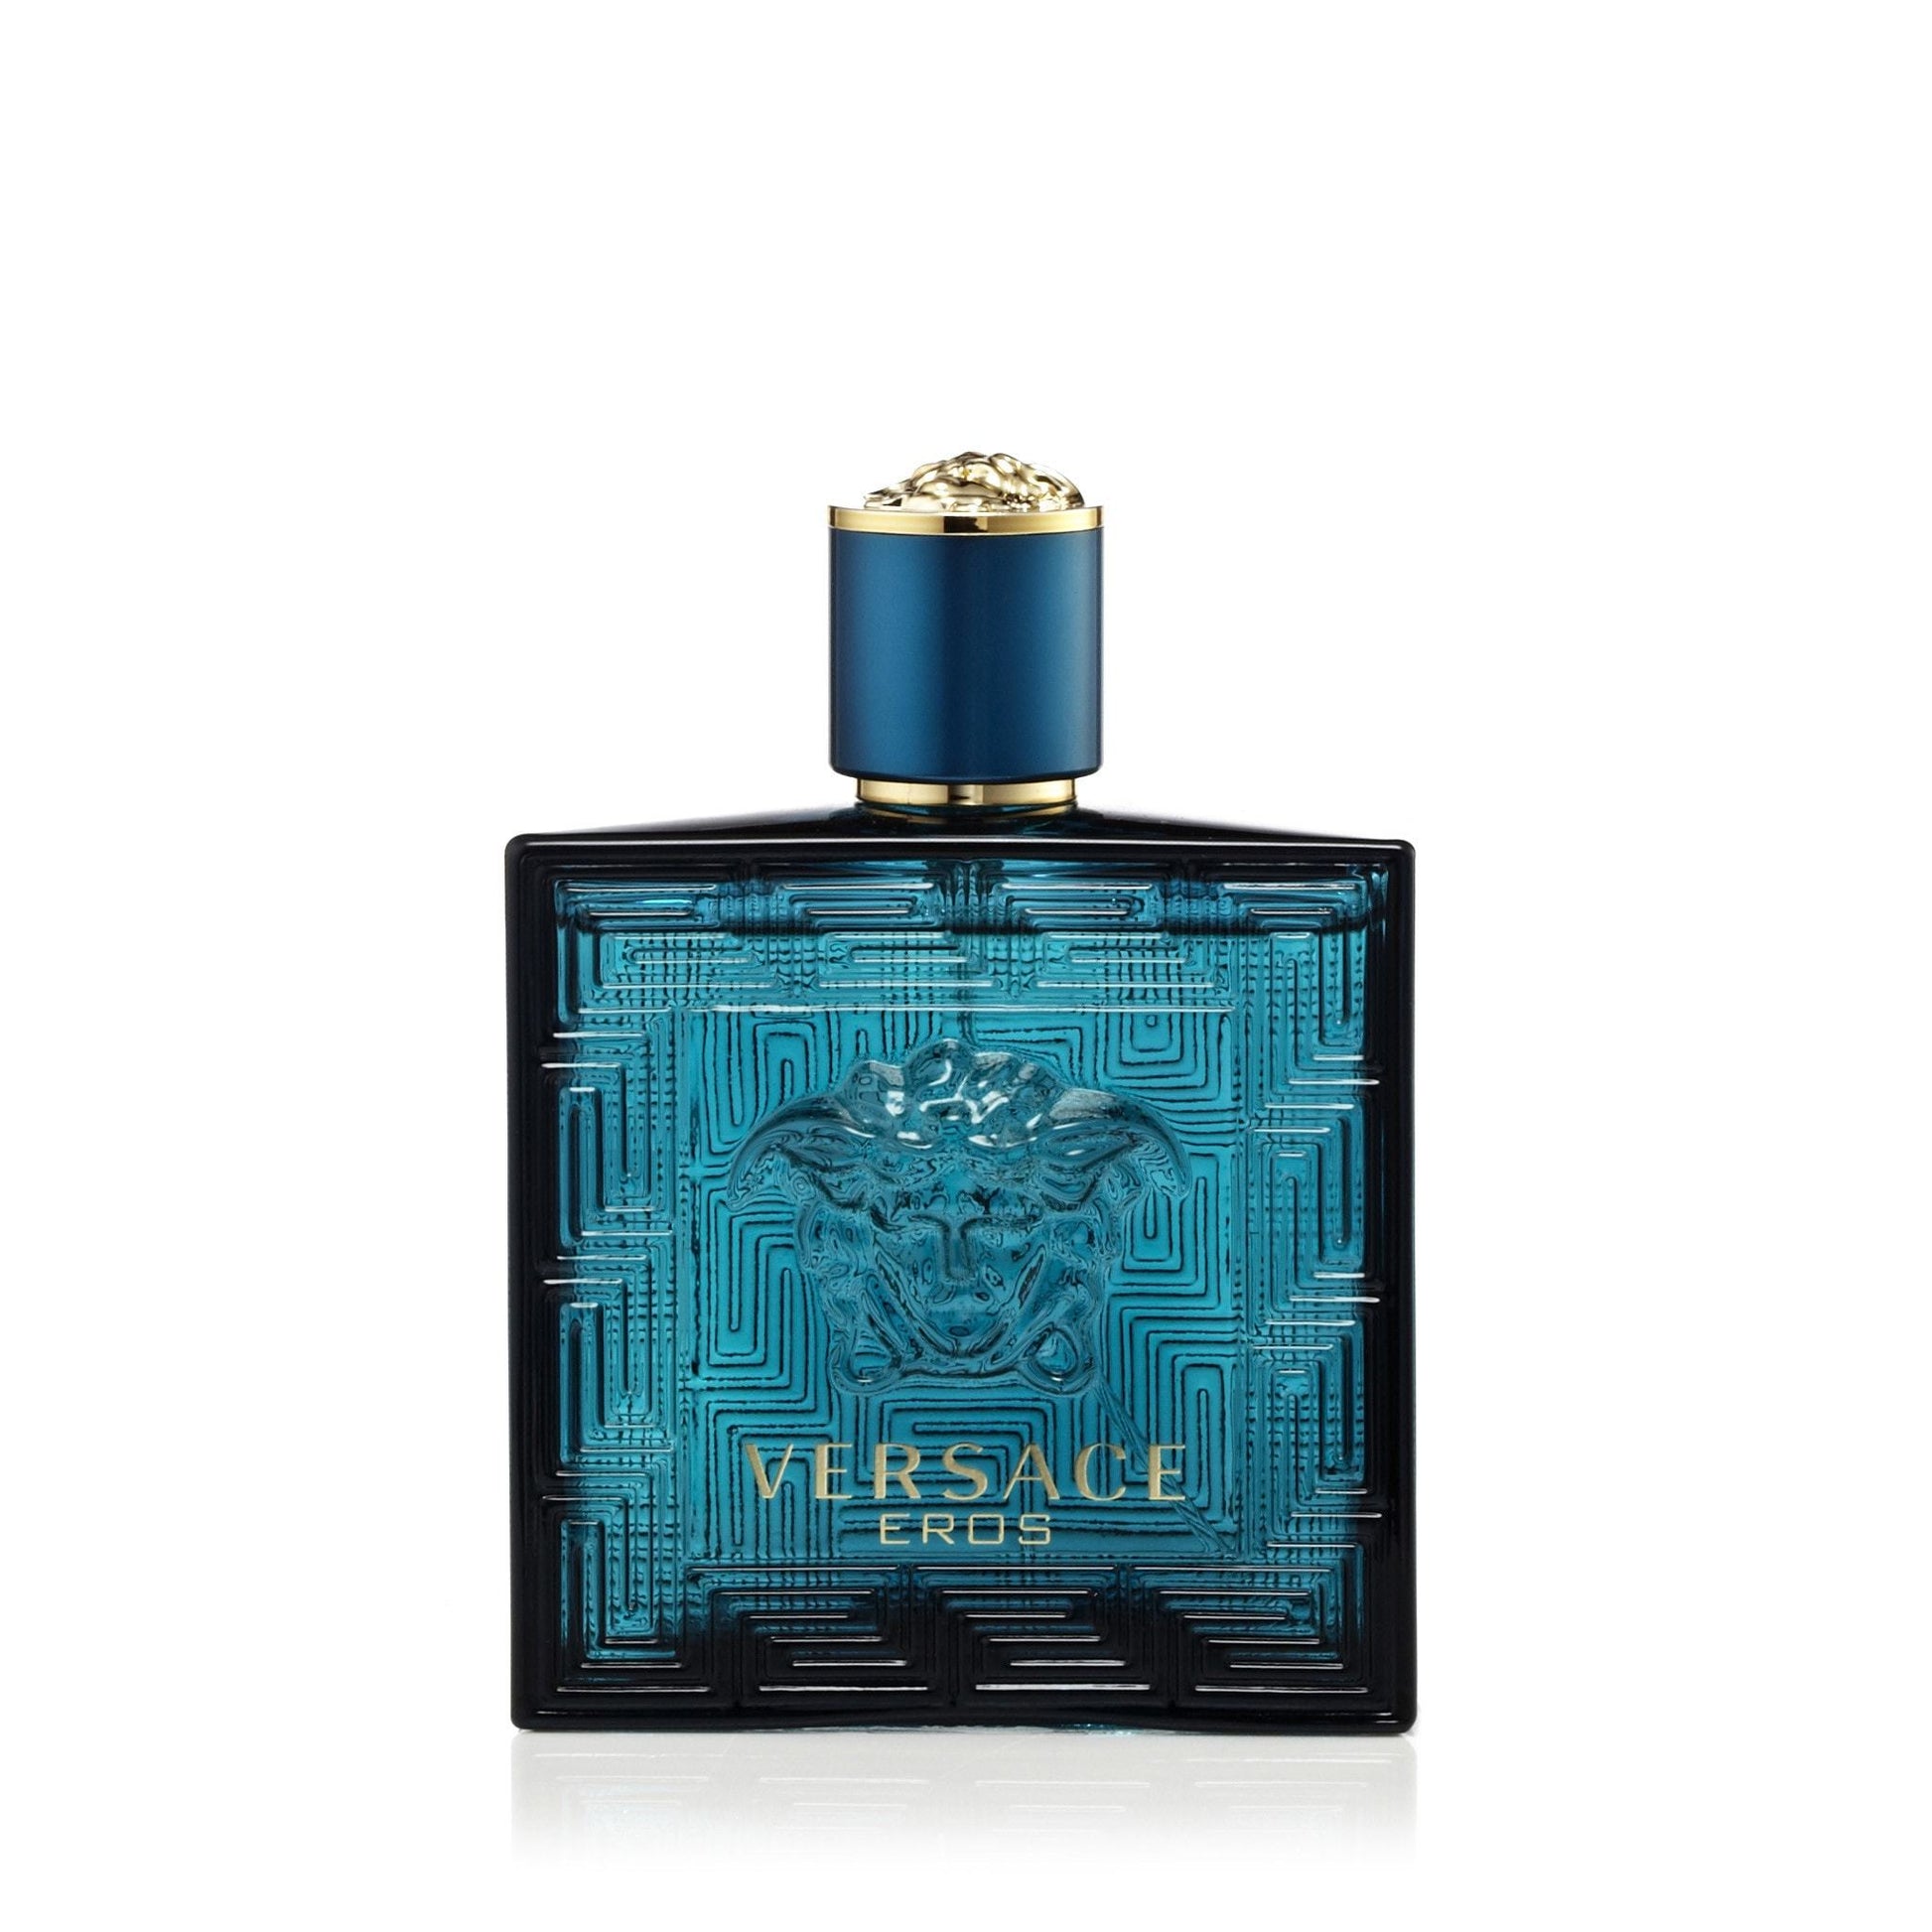 Eros Eau de Toilette Spray for Men by Versace, Product image 6